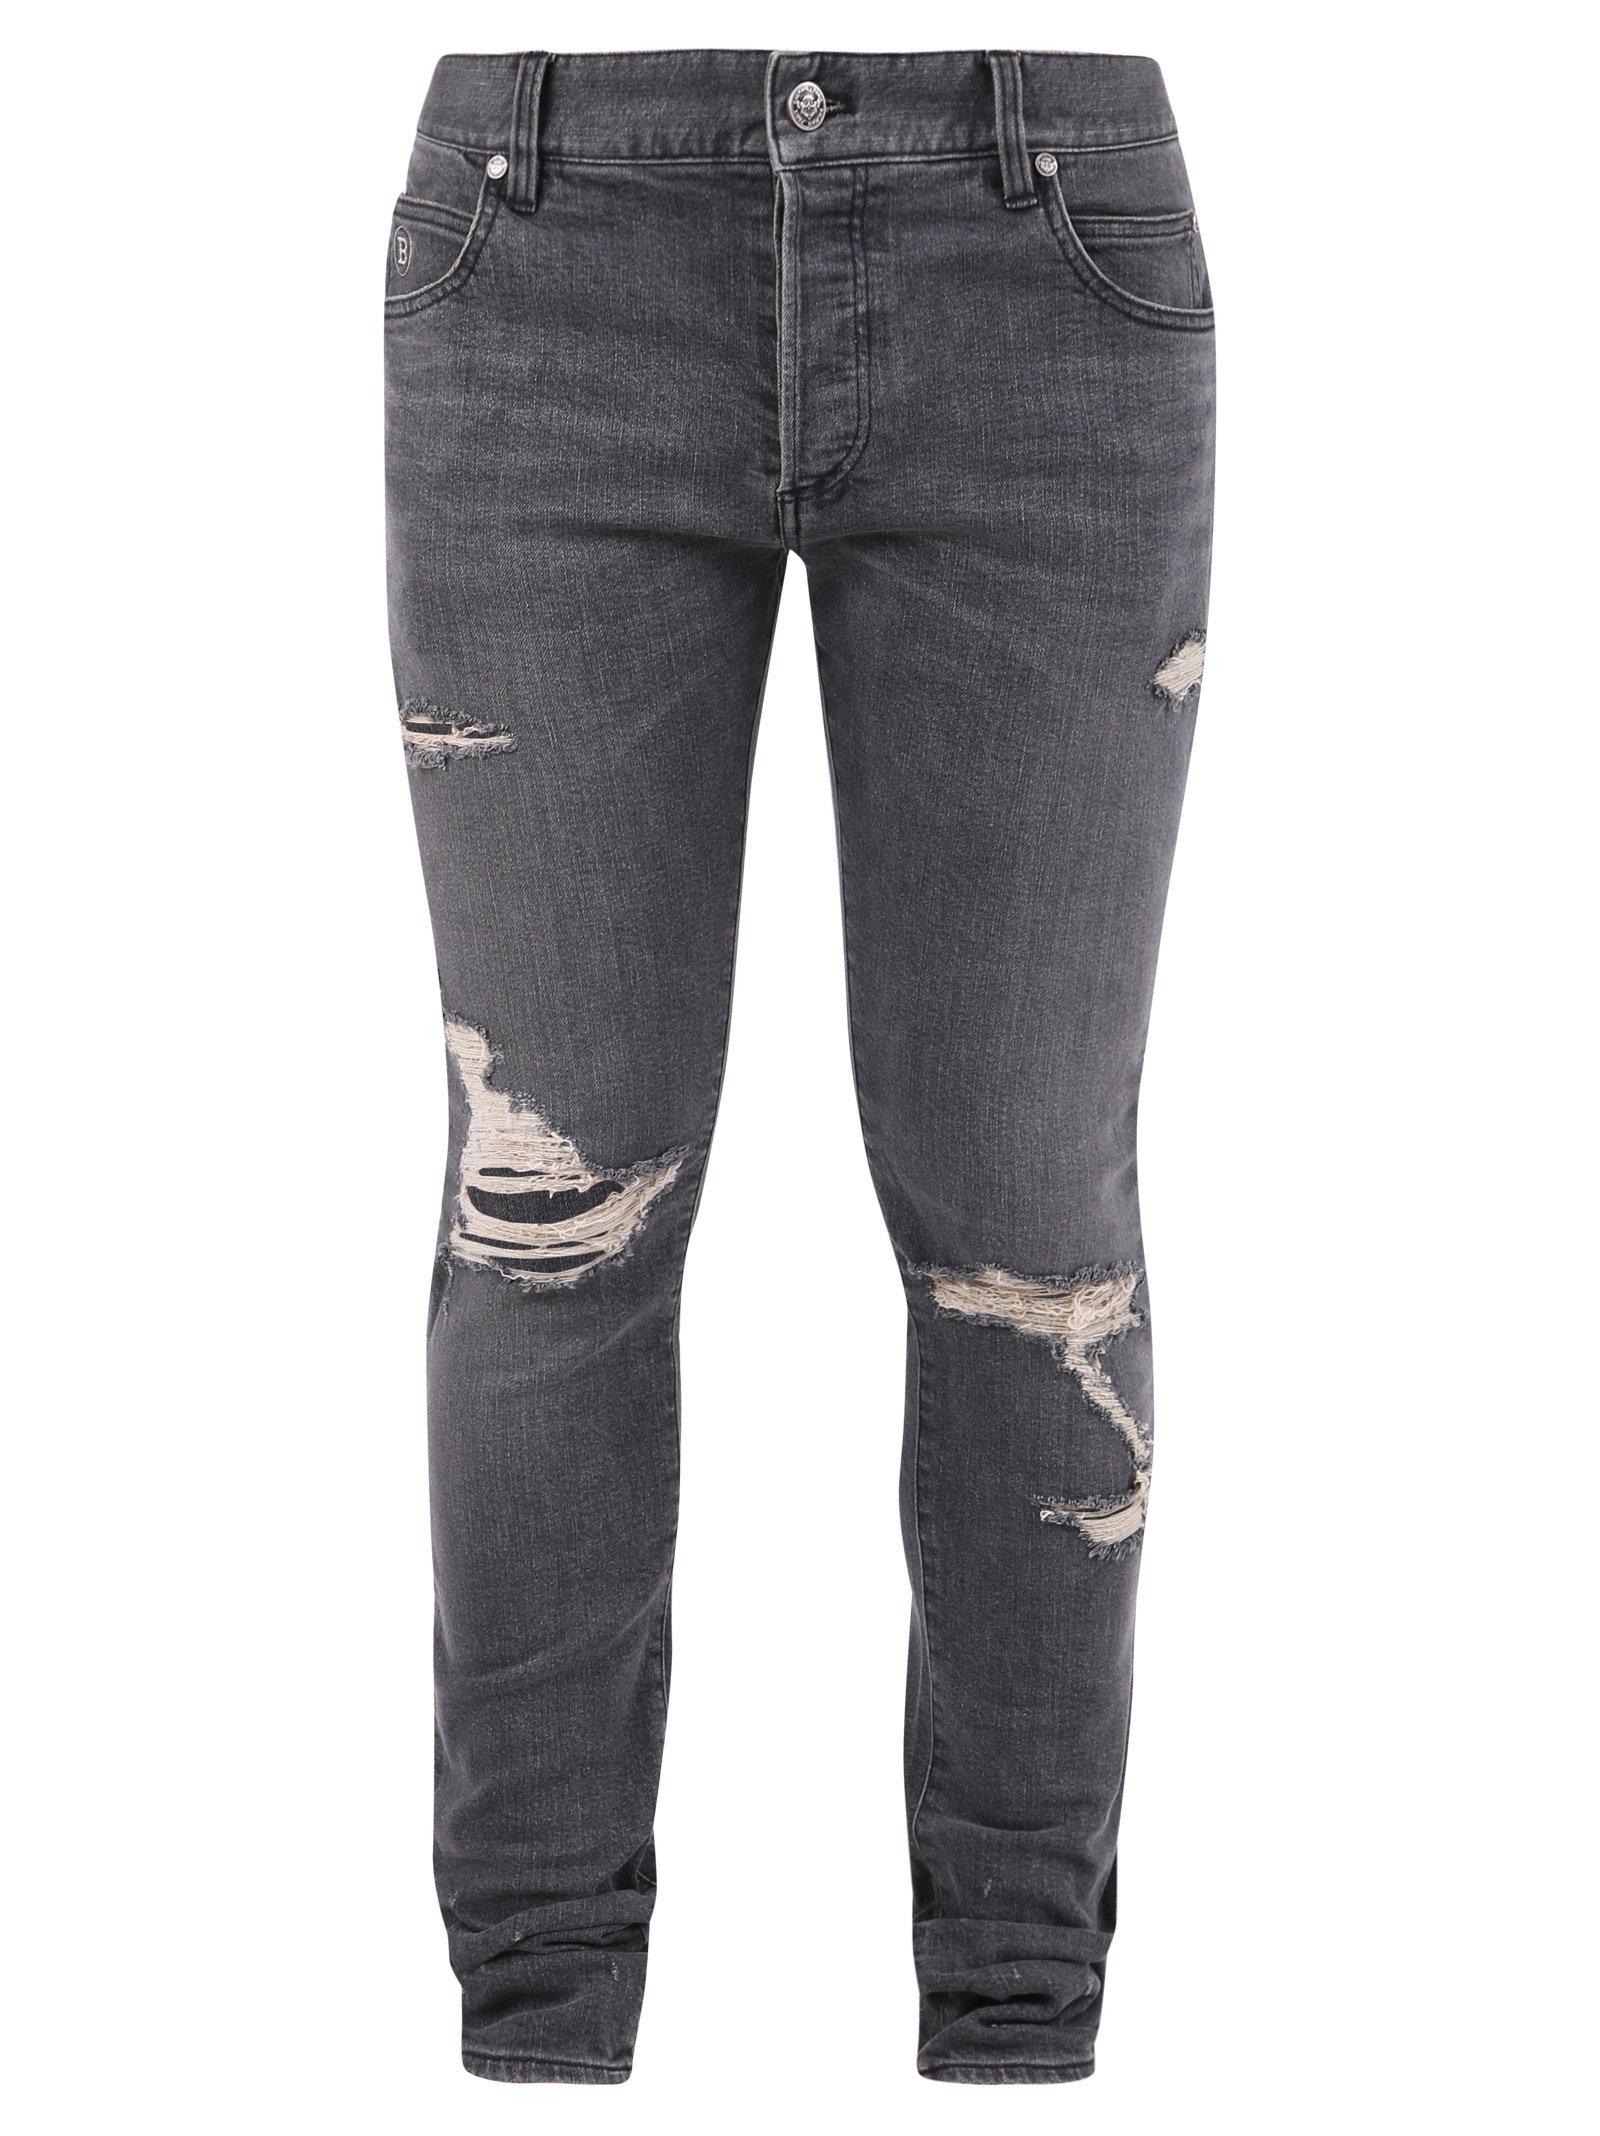 Balmain Denim Distressed Jeans in Grey (Gray) for Men - Lyst